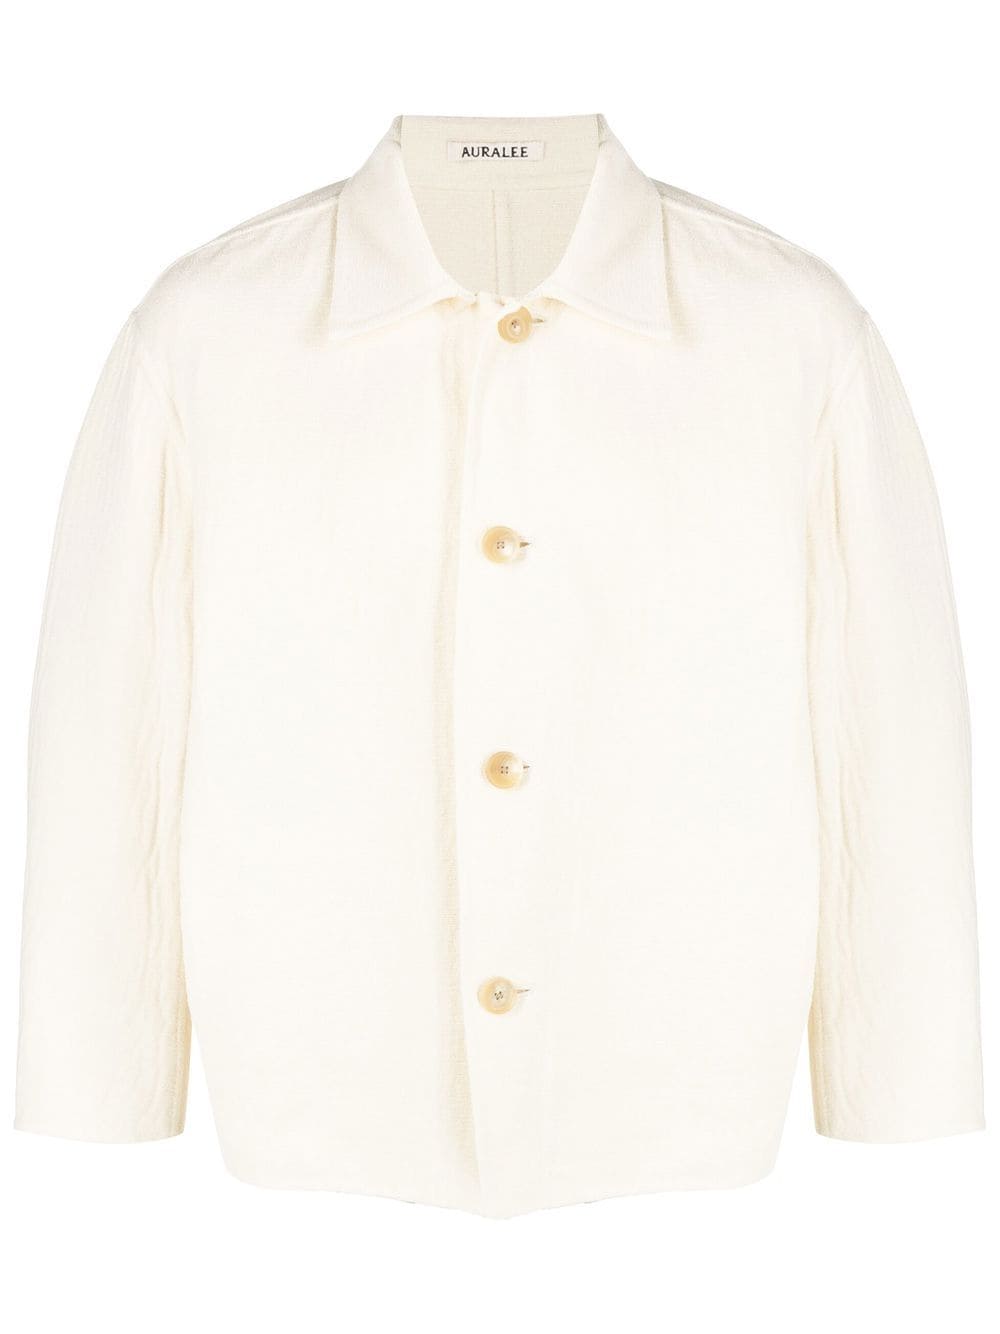 Auralee cotton-wool classic shirt jacket - Neutrals von Auralee